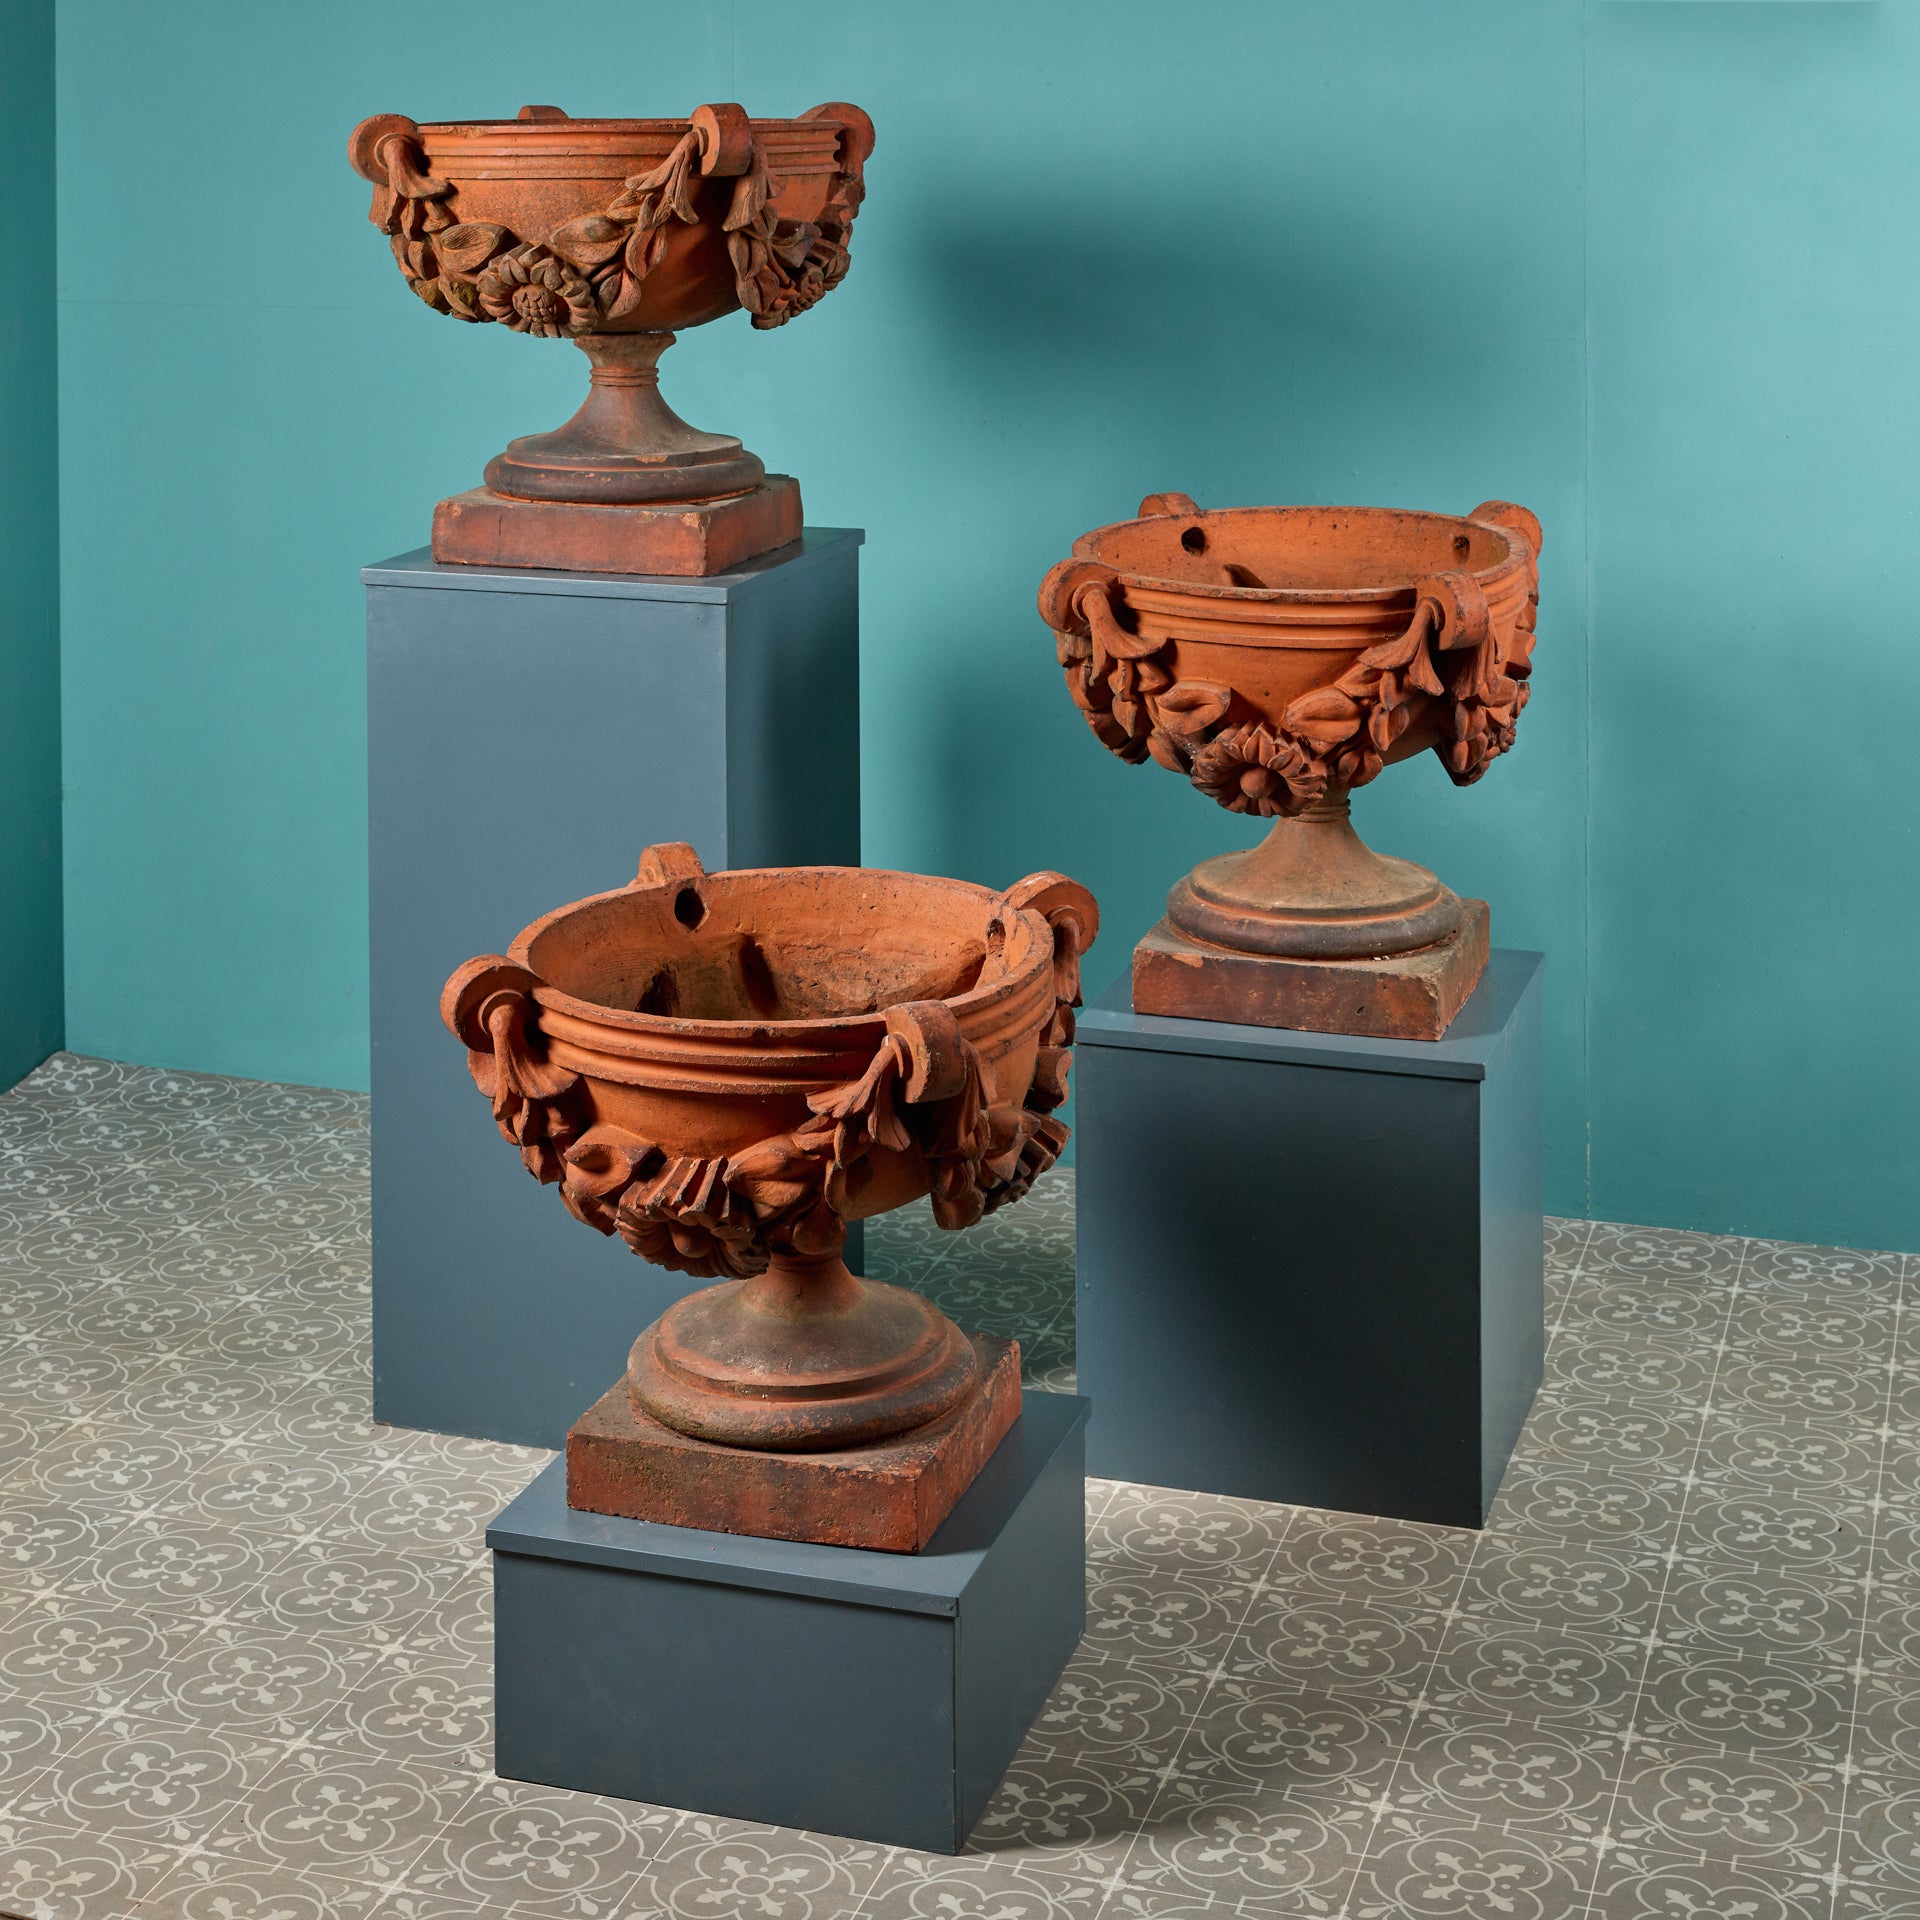 Un ensemble impressionnant de trois jardinières ou vases anciens en terre cuite de style classique, parfaits pour être utilisés comme statues ou jardinières dans un jardin. Datant de l'Angleterre du XIXe siècle, ces urnes de jardin antiques ont